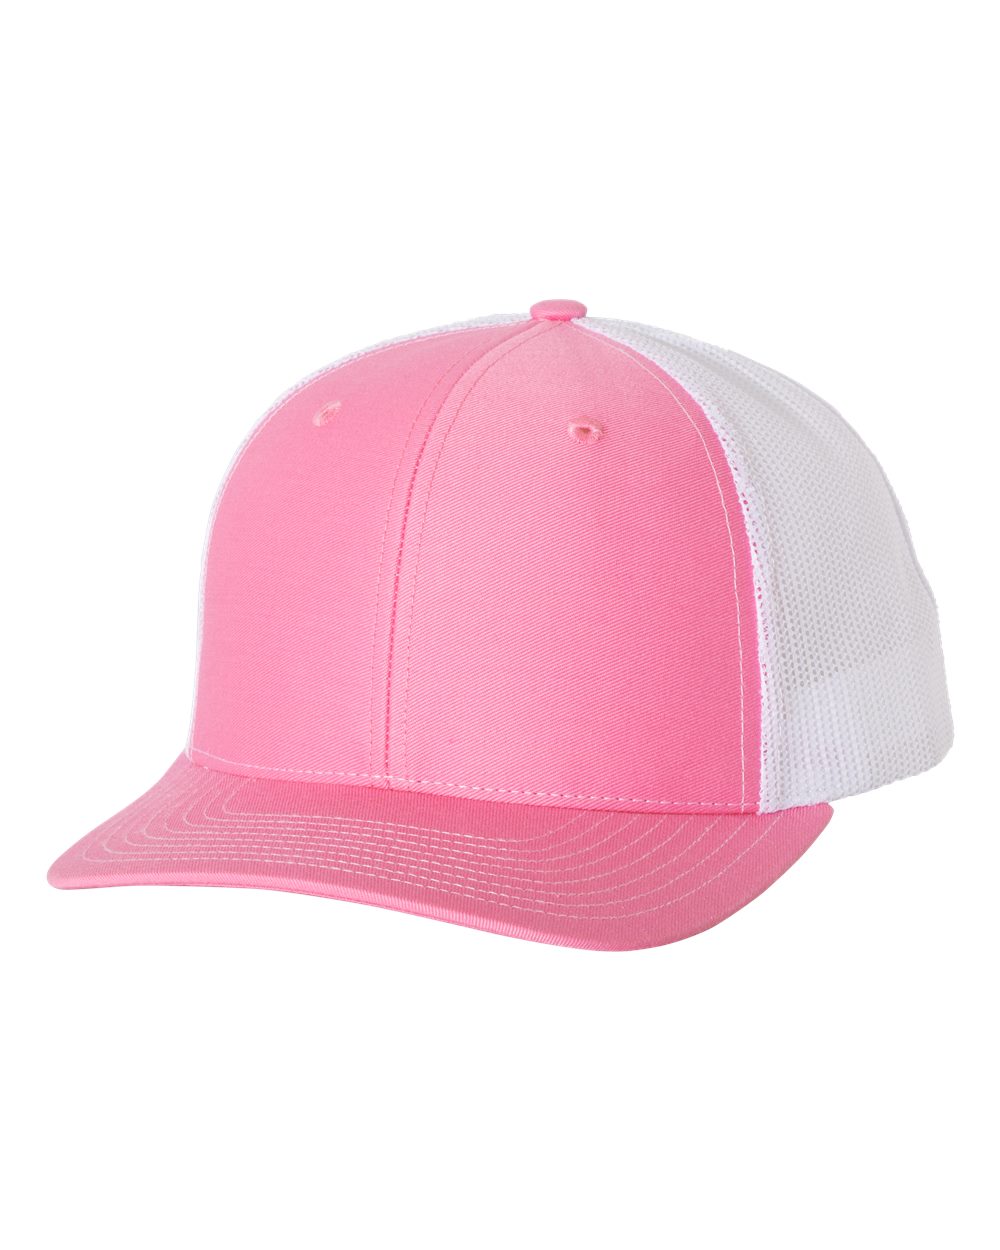 richardson cap hot pink white